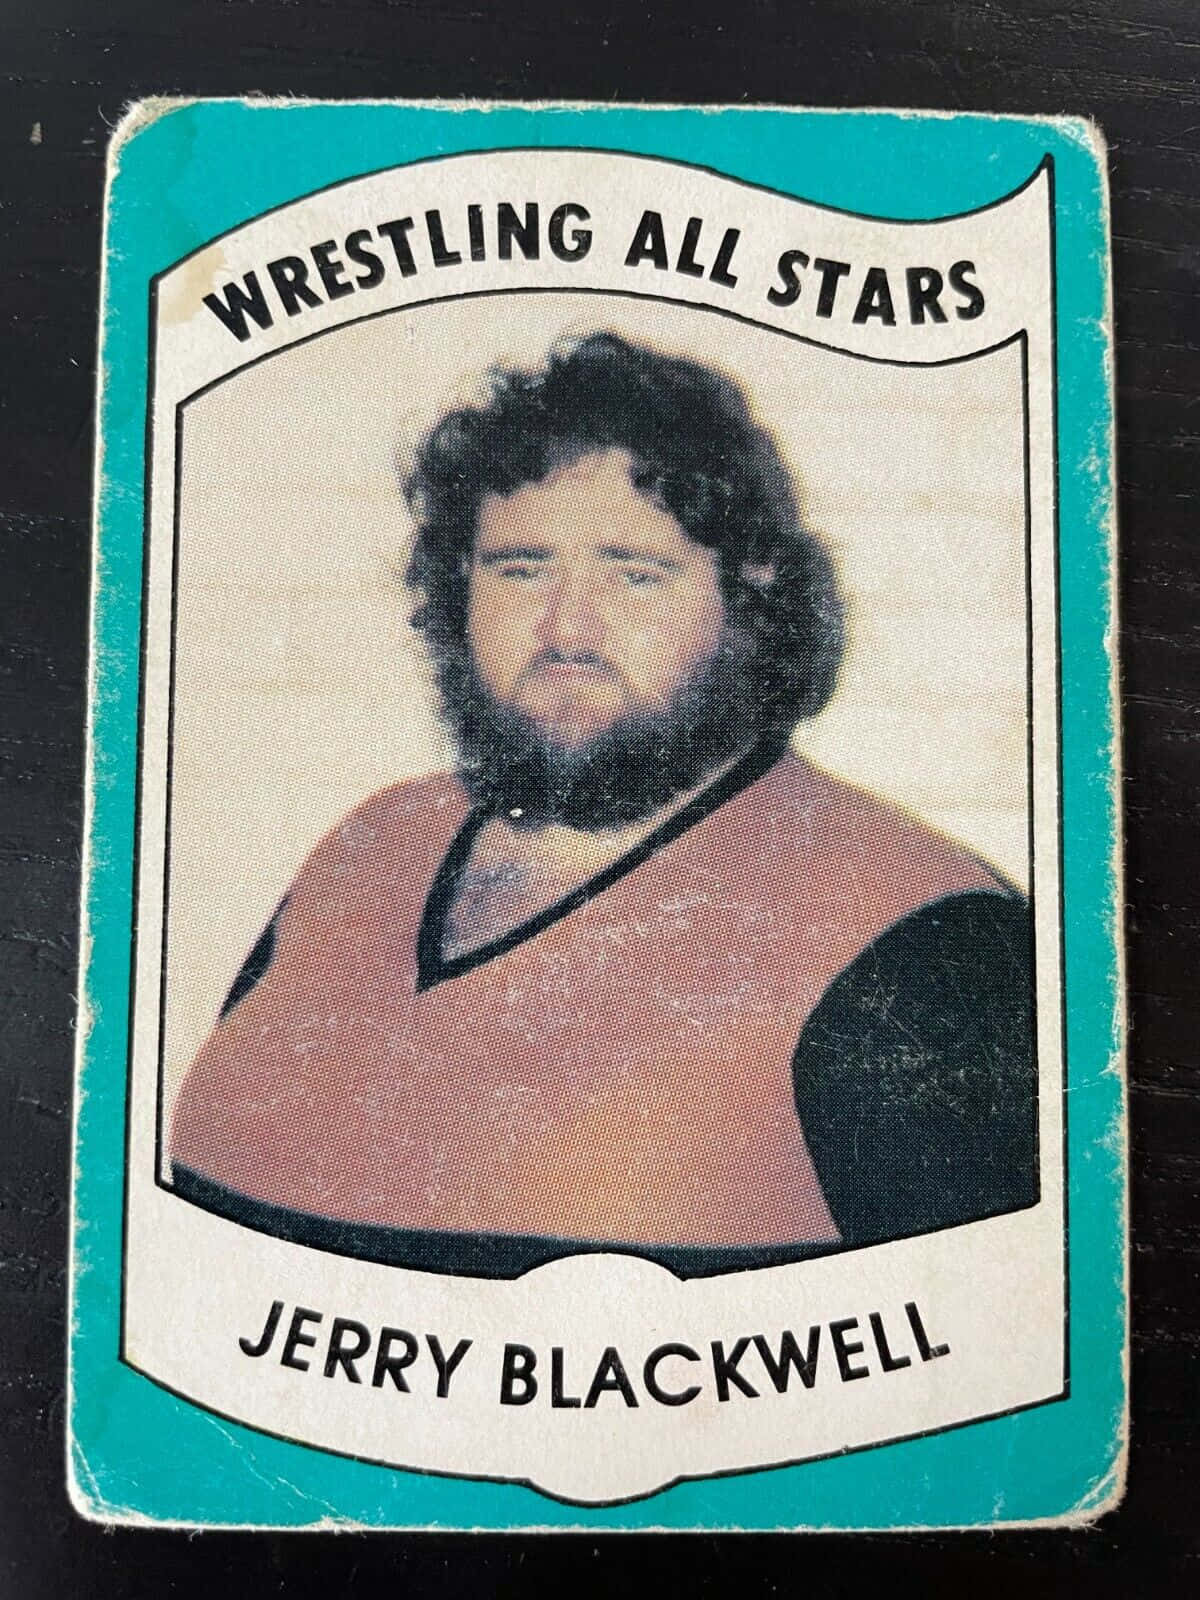 Tarjetade Jerry Blackwell De Wrestling All Stars. Fondo de pantalla